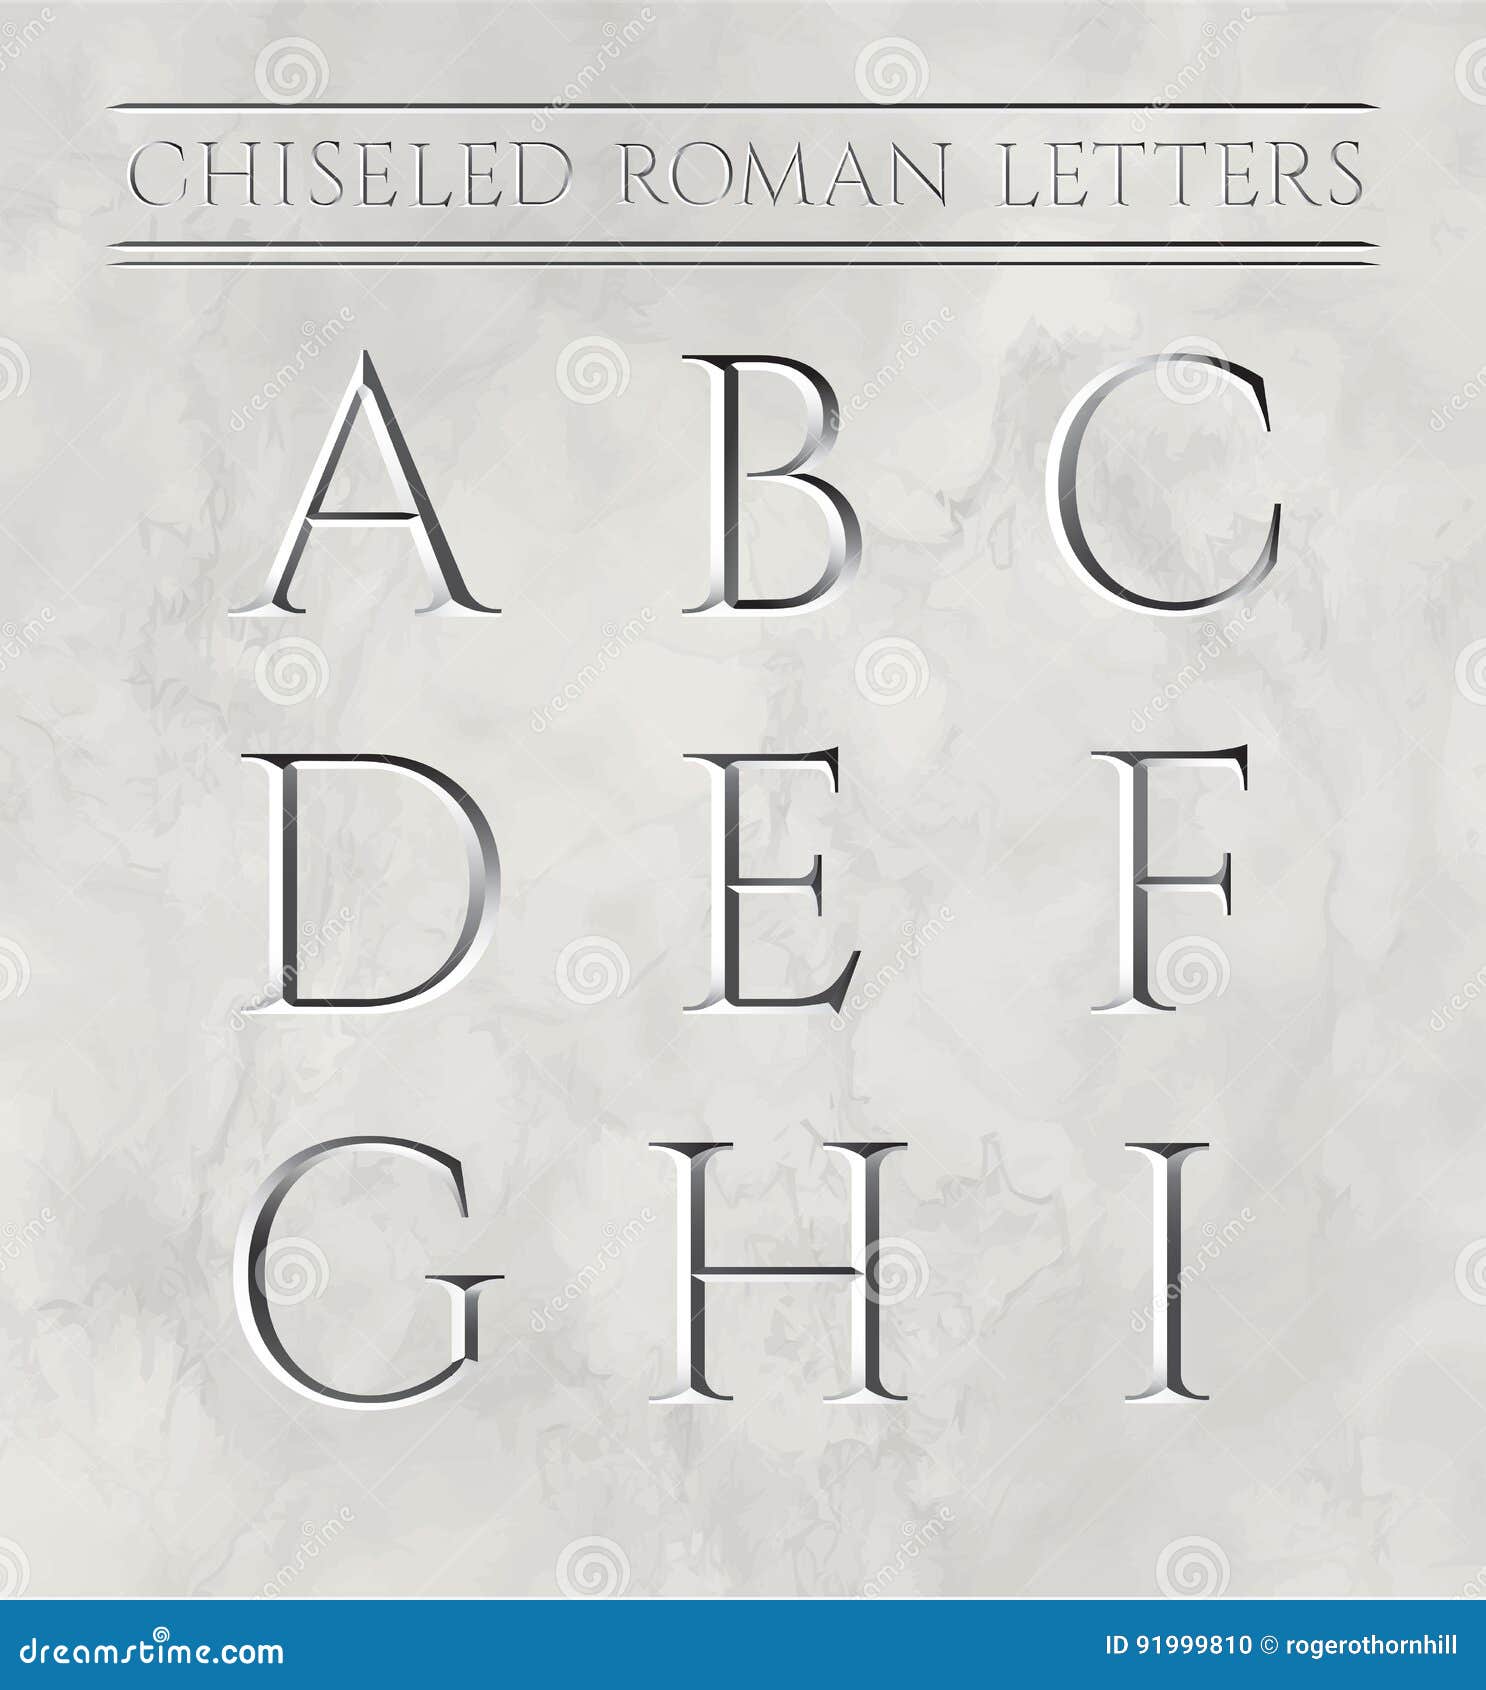 中国各民族名称的罗马字母拼写法和代码